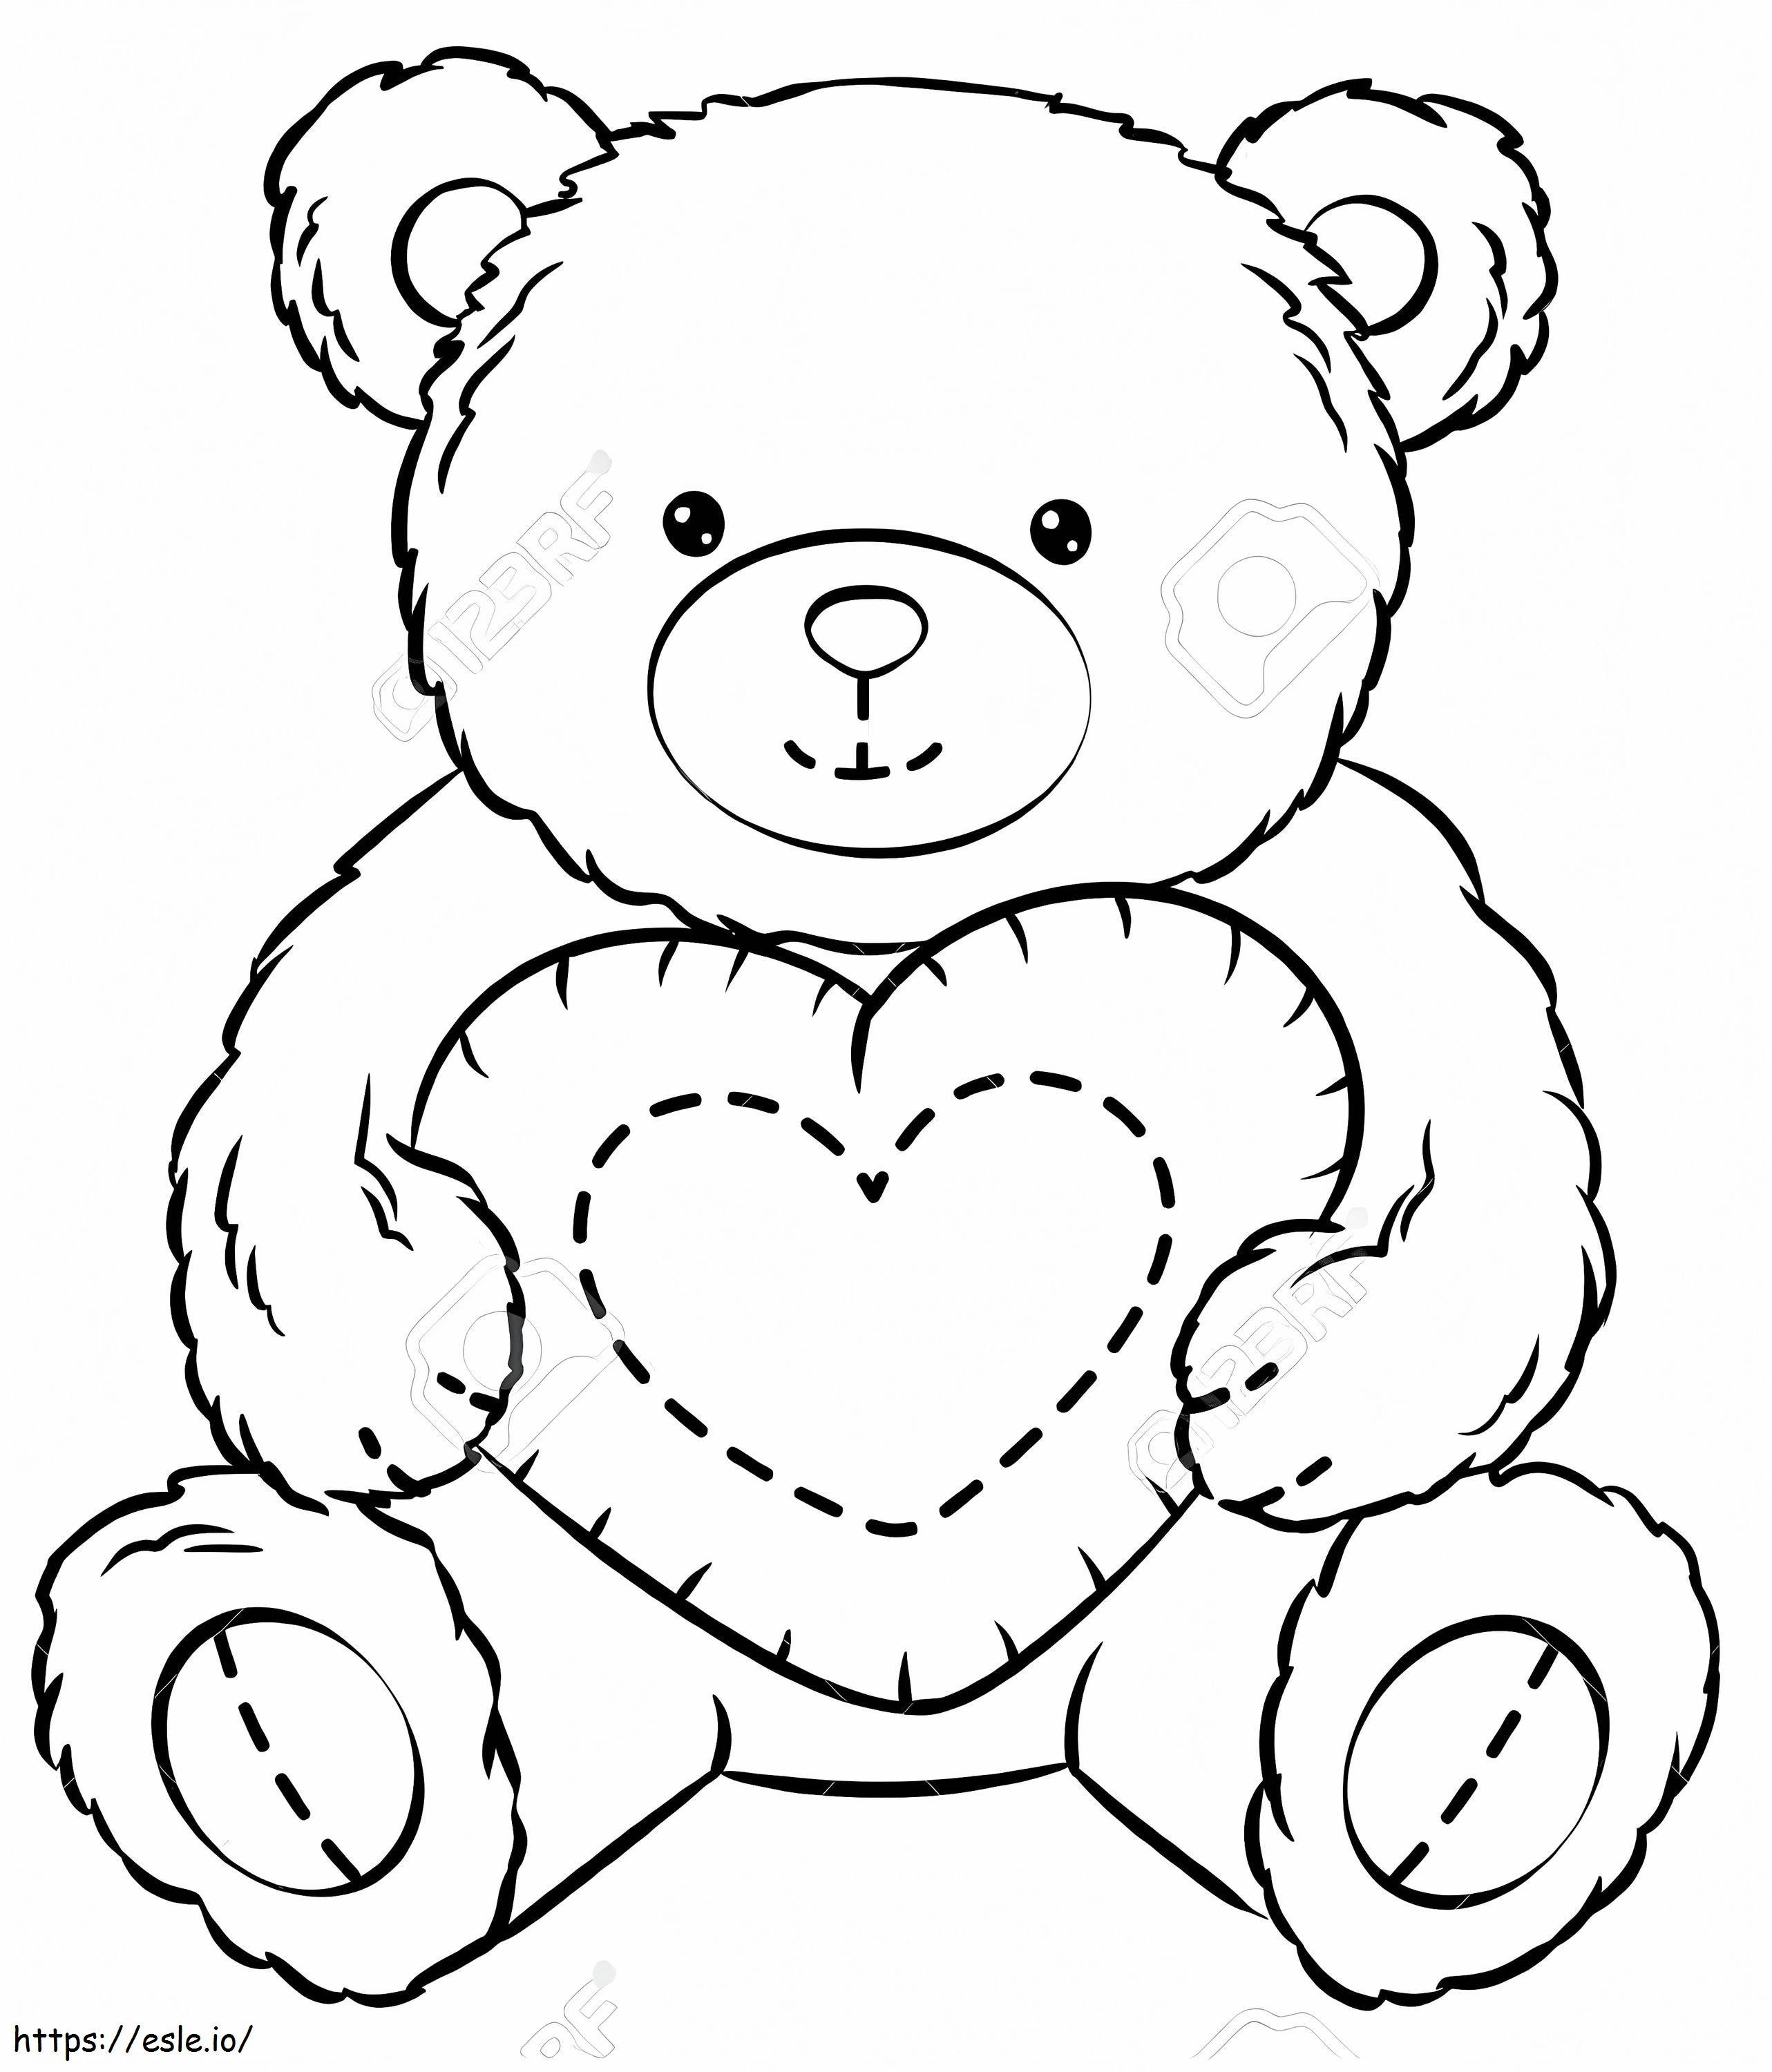 Teddybär mit Herz ausmalbilder